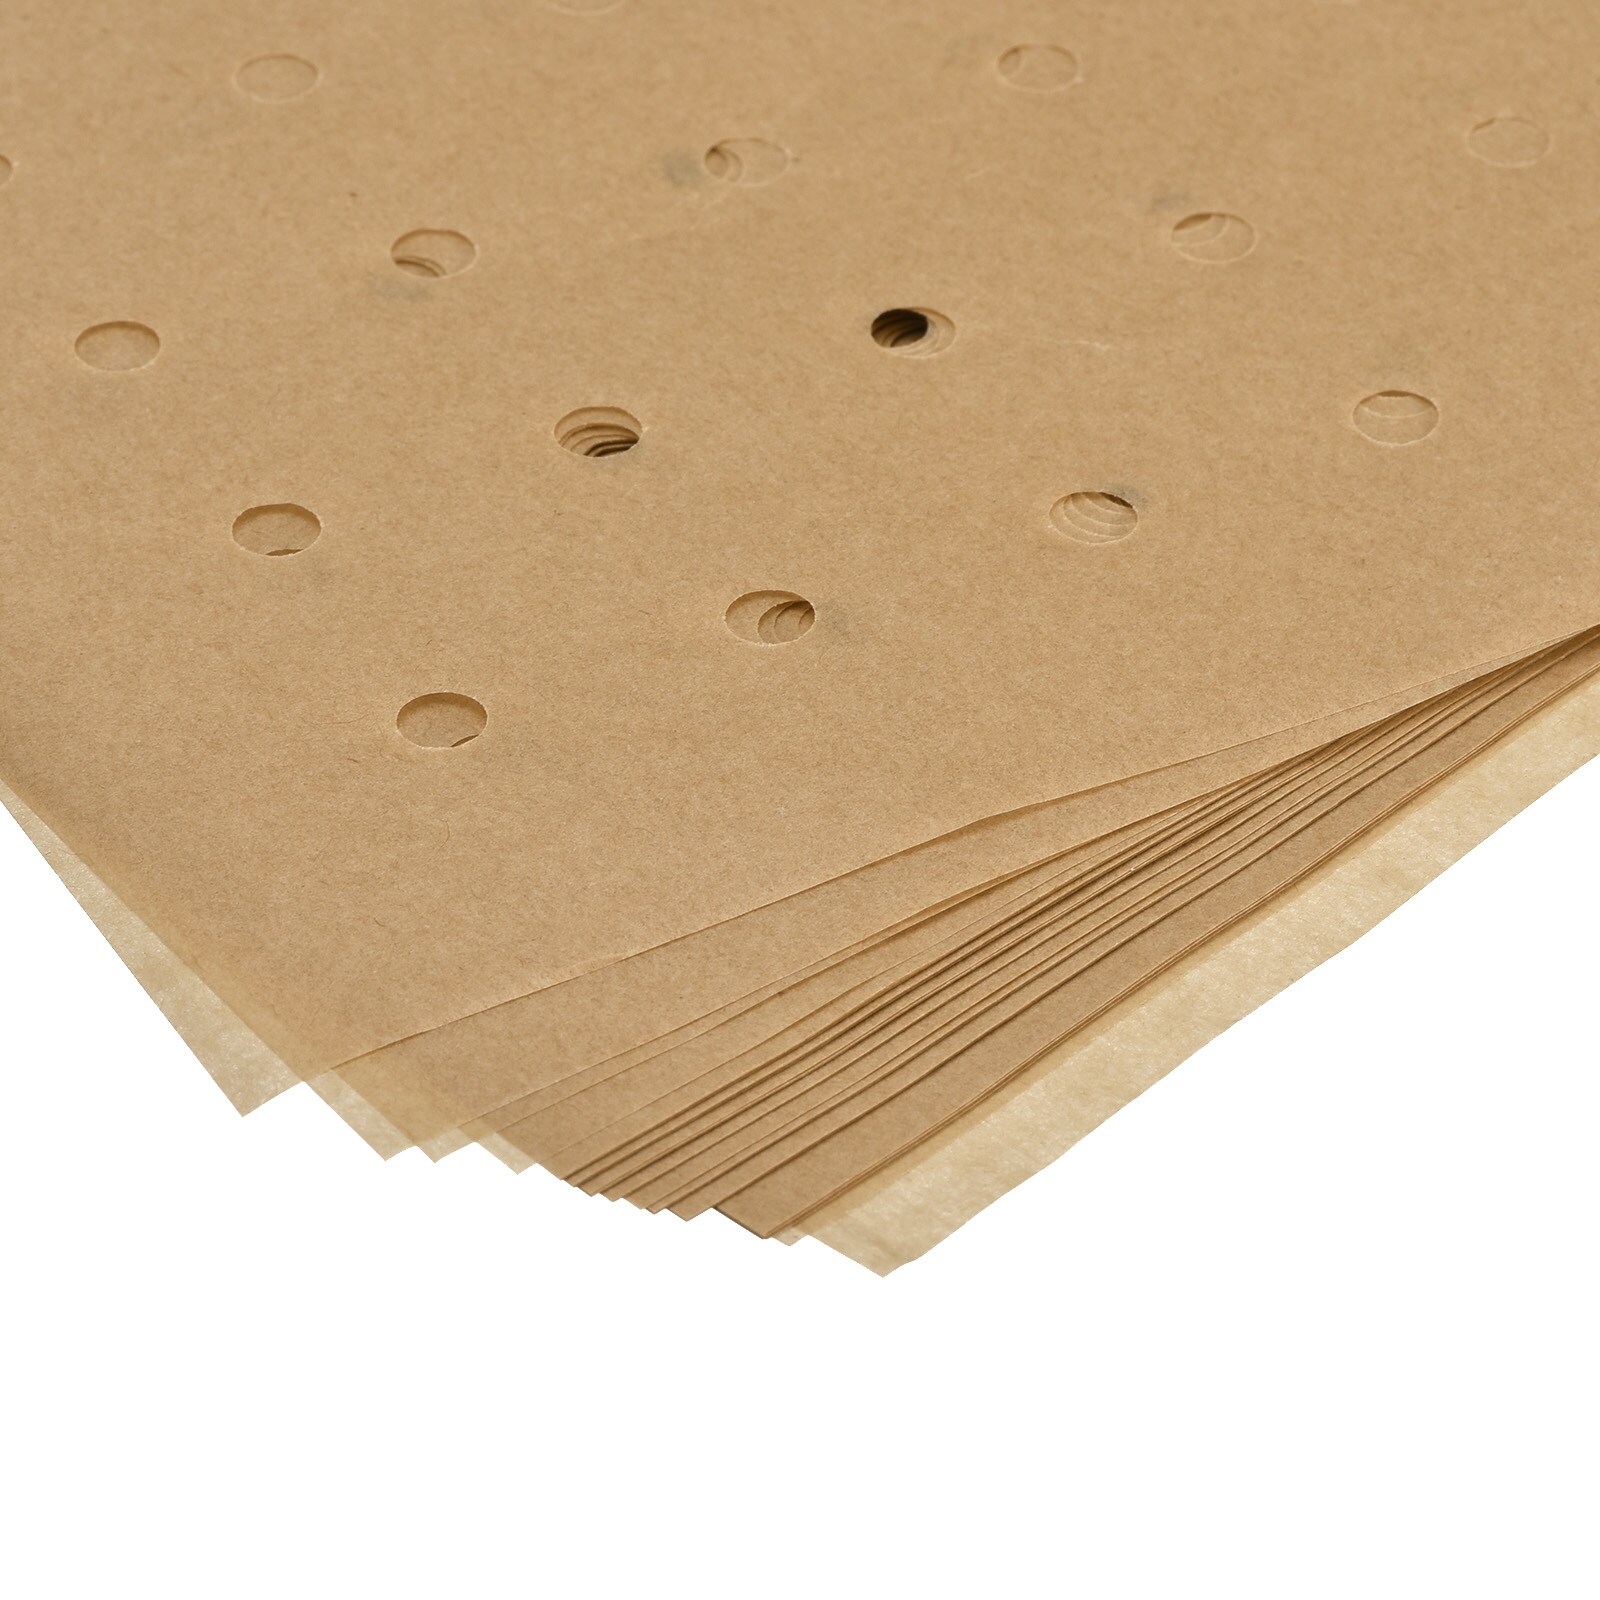 50pcs Rectangle Air Fryer Liners, Parchment Paper Sheets, Non